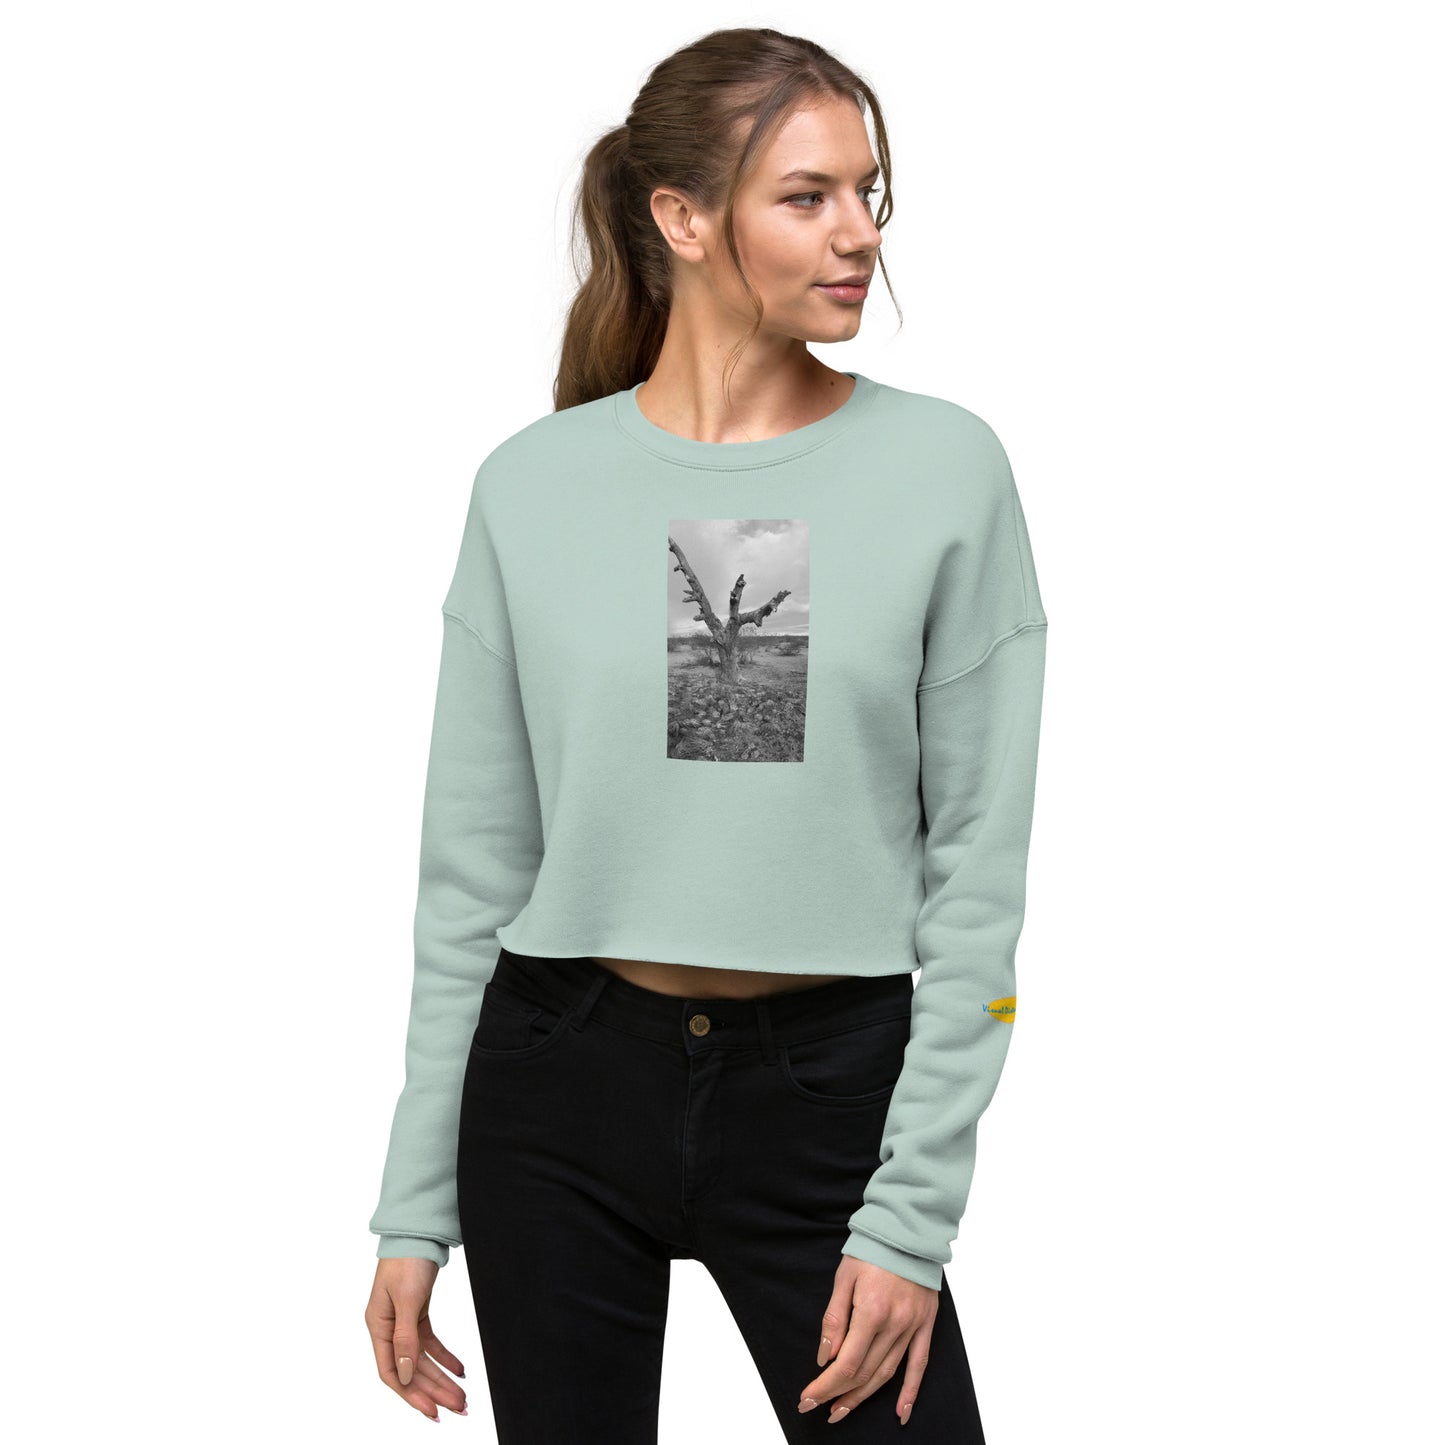 Old Joshua Tree Crop Sweatshirt